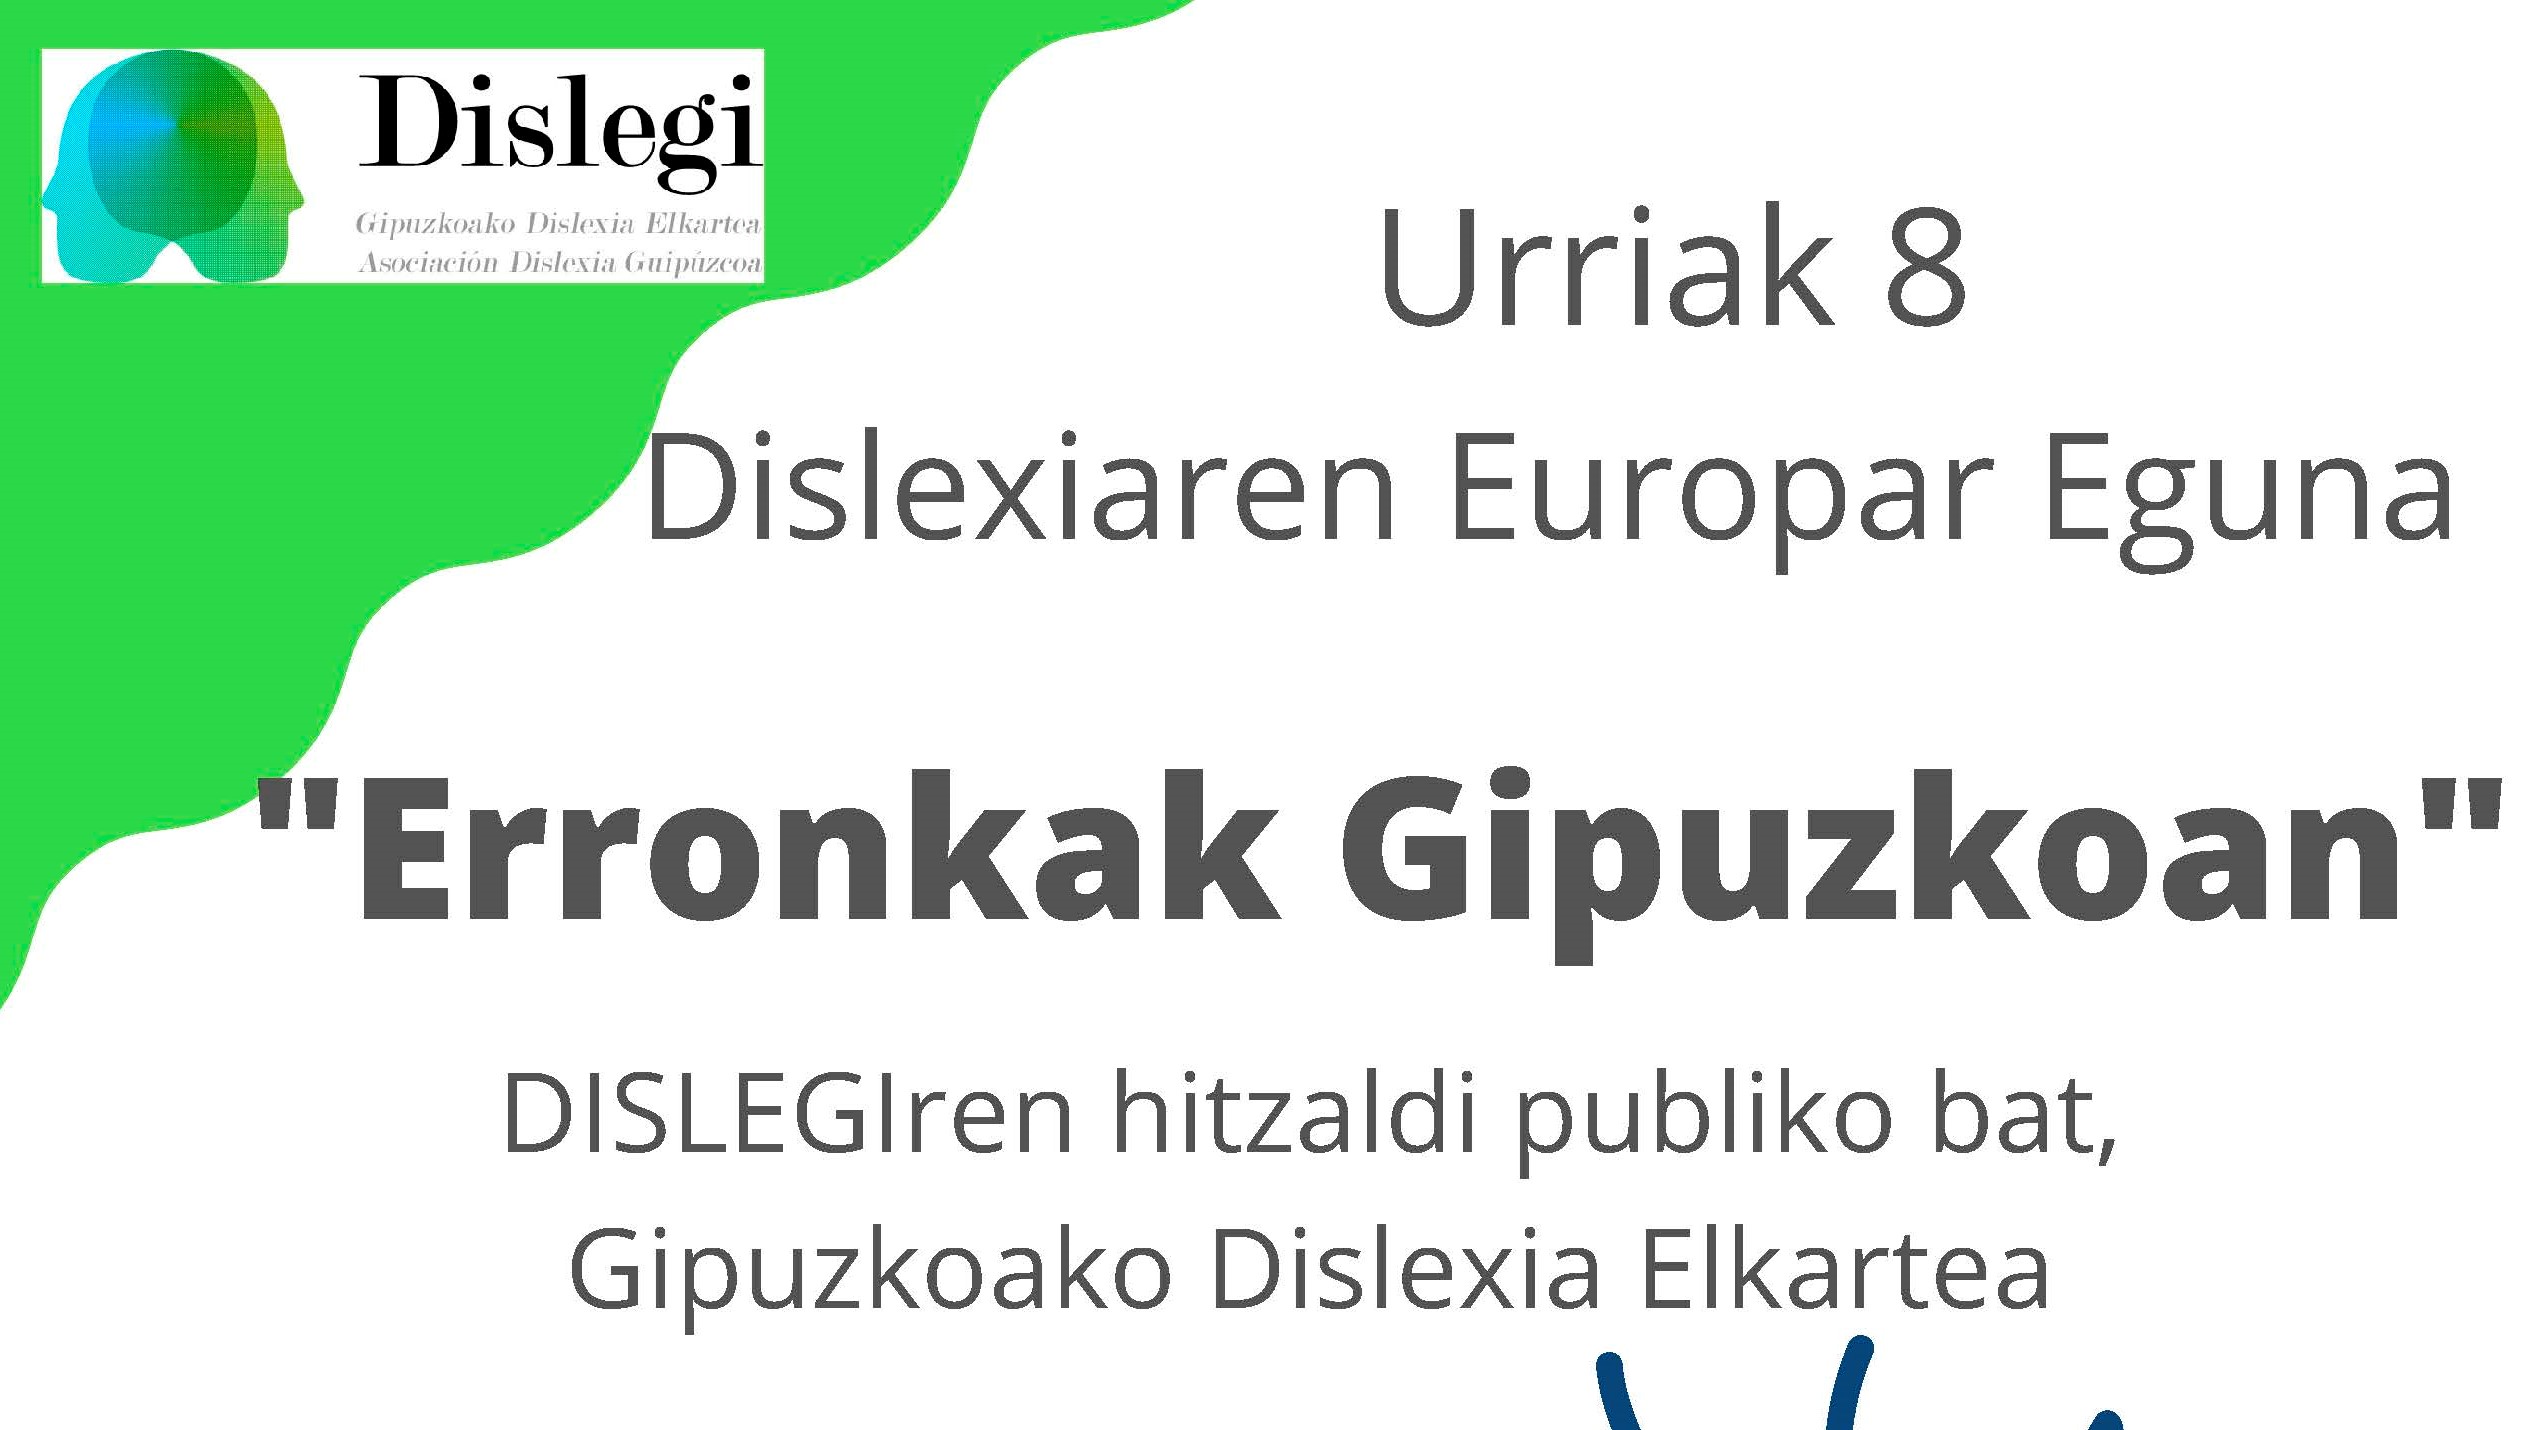 Mañana tendrá lugar una charla sobre la dislexia bajo el título ‘Retos en Gipuzkoa’